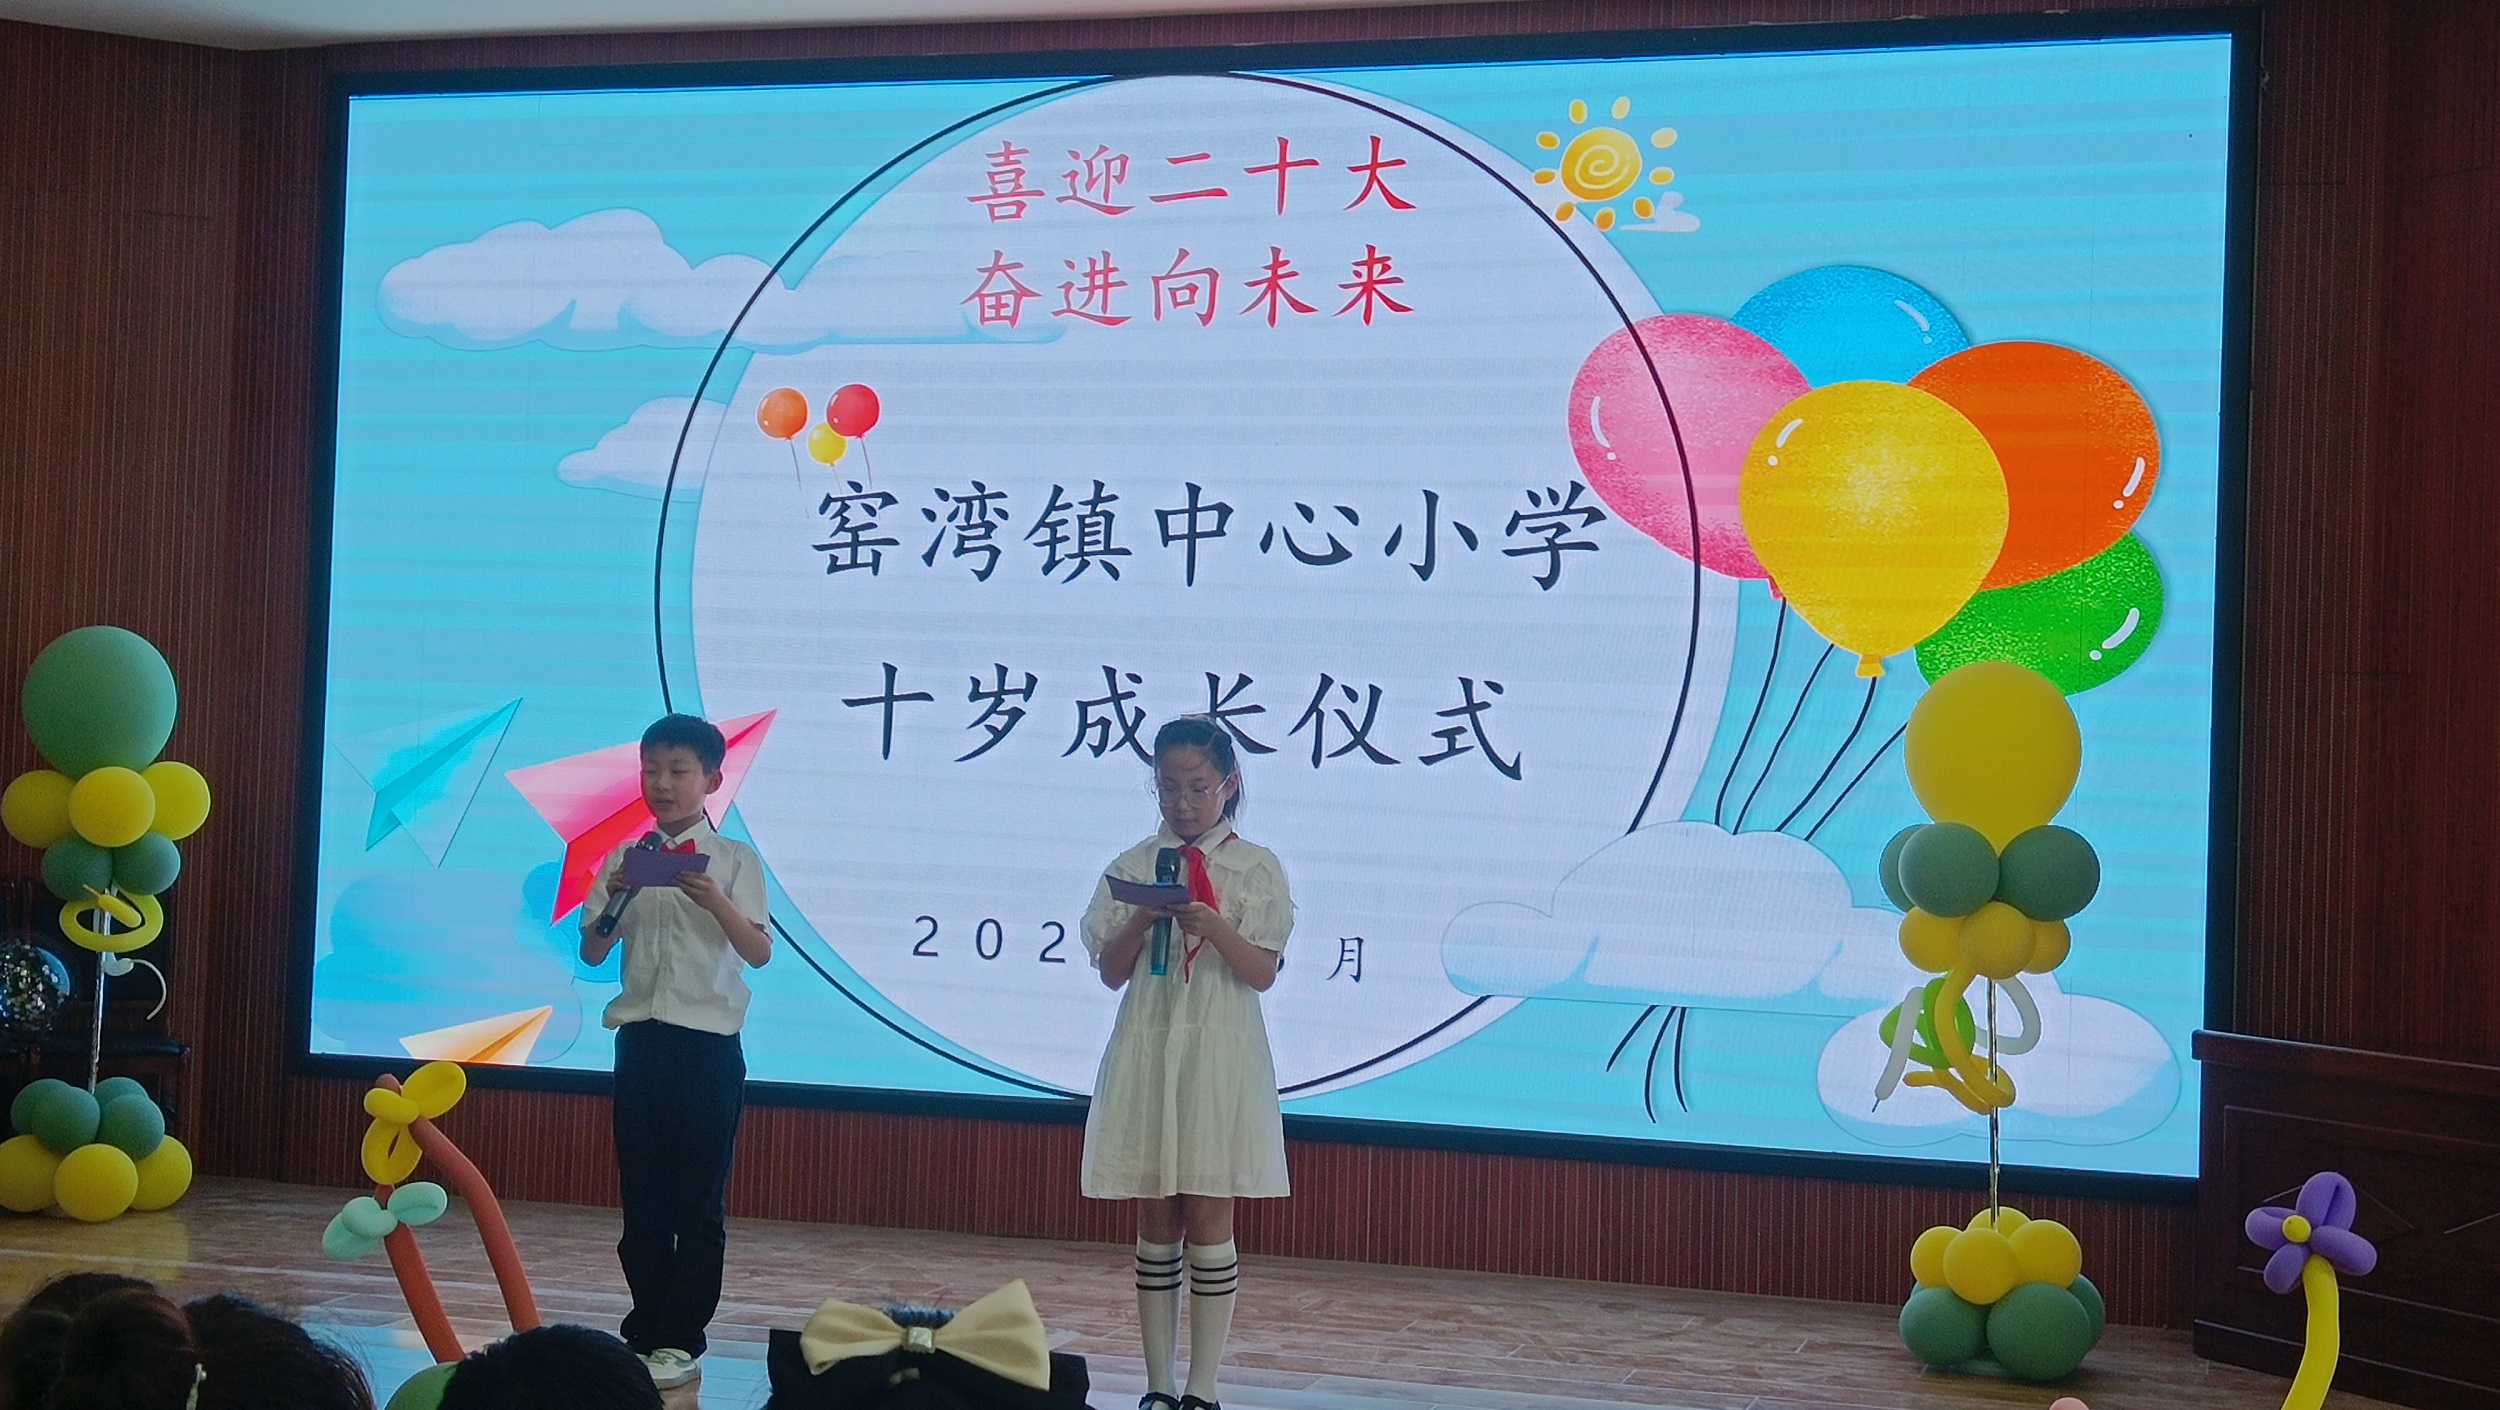 喜迎二十大 奋进向未来 ----窑湾镇中心小学十岁成长仪式